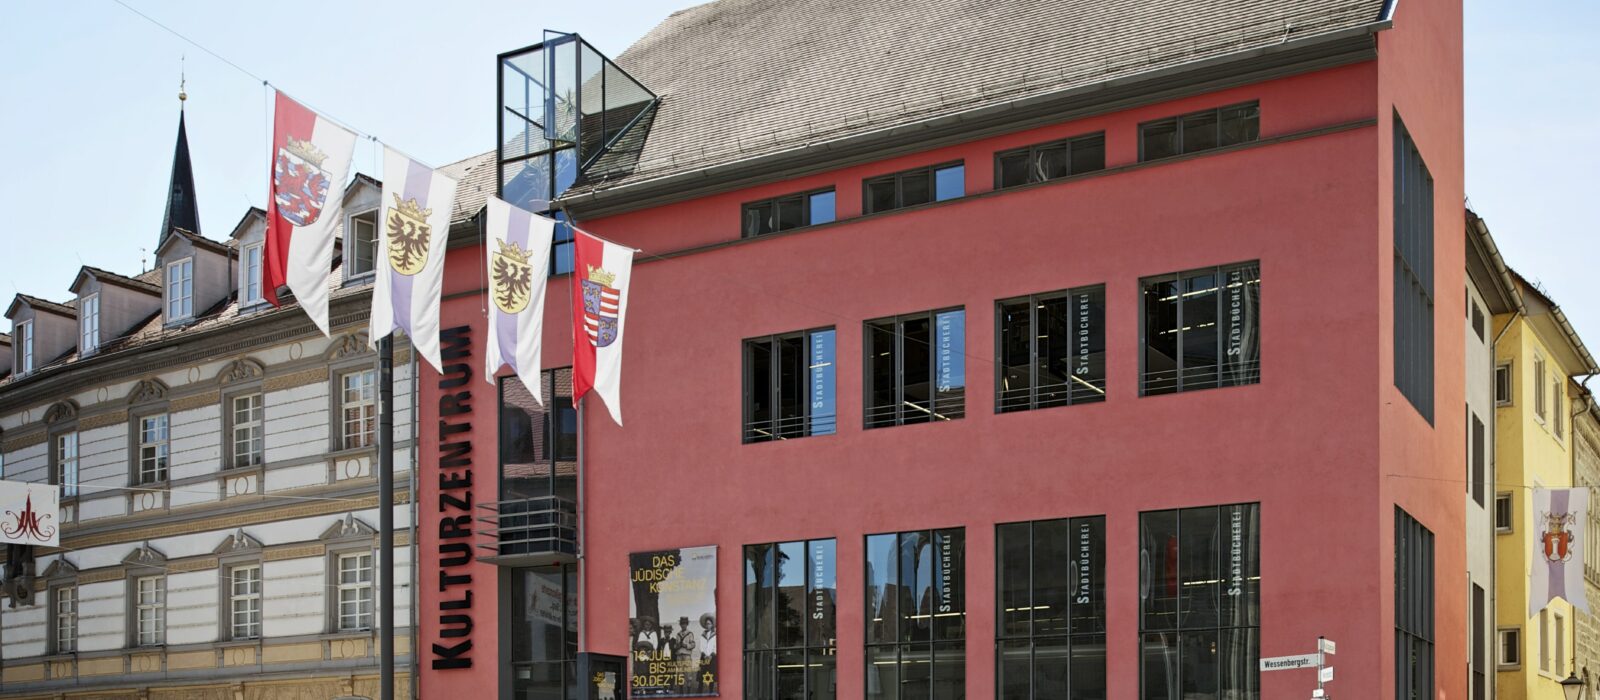 querformatige Außenansicht der Städtischen Wessenberg Galerie im Kulturzentrum, rotes Haus mit Satteldach